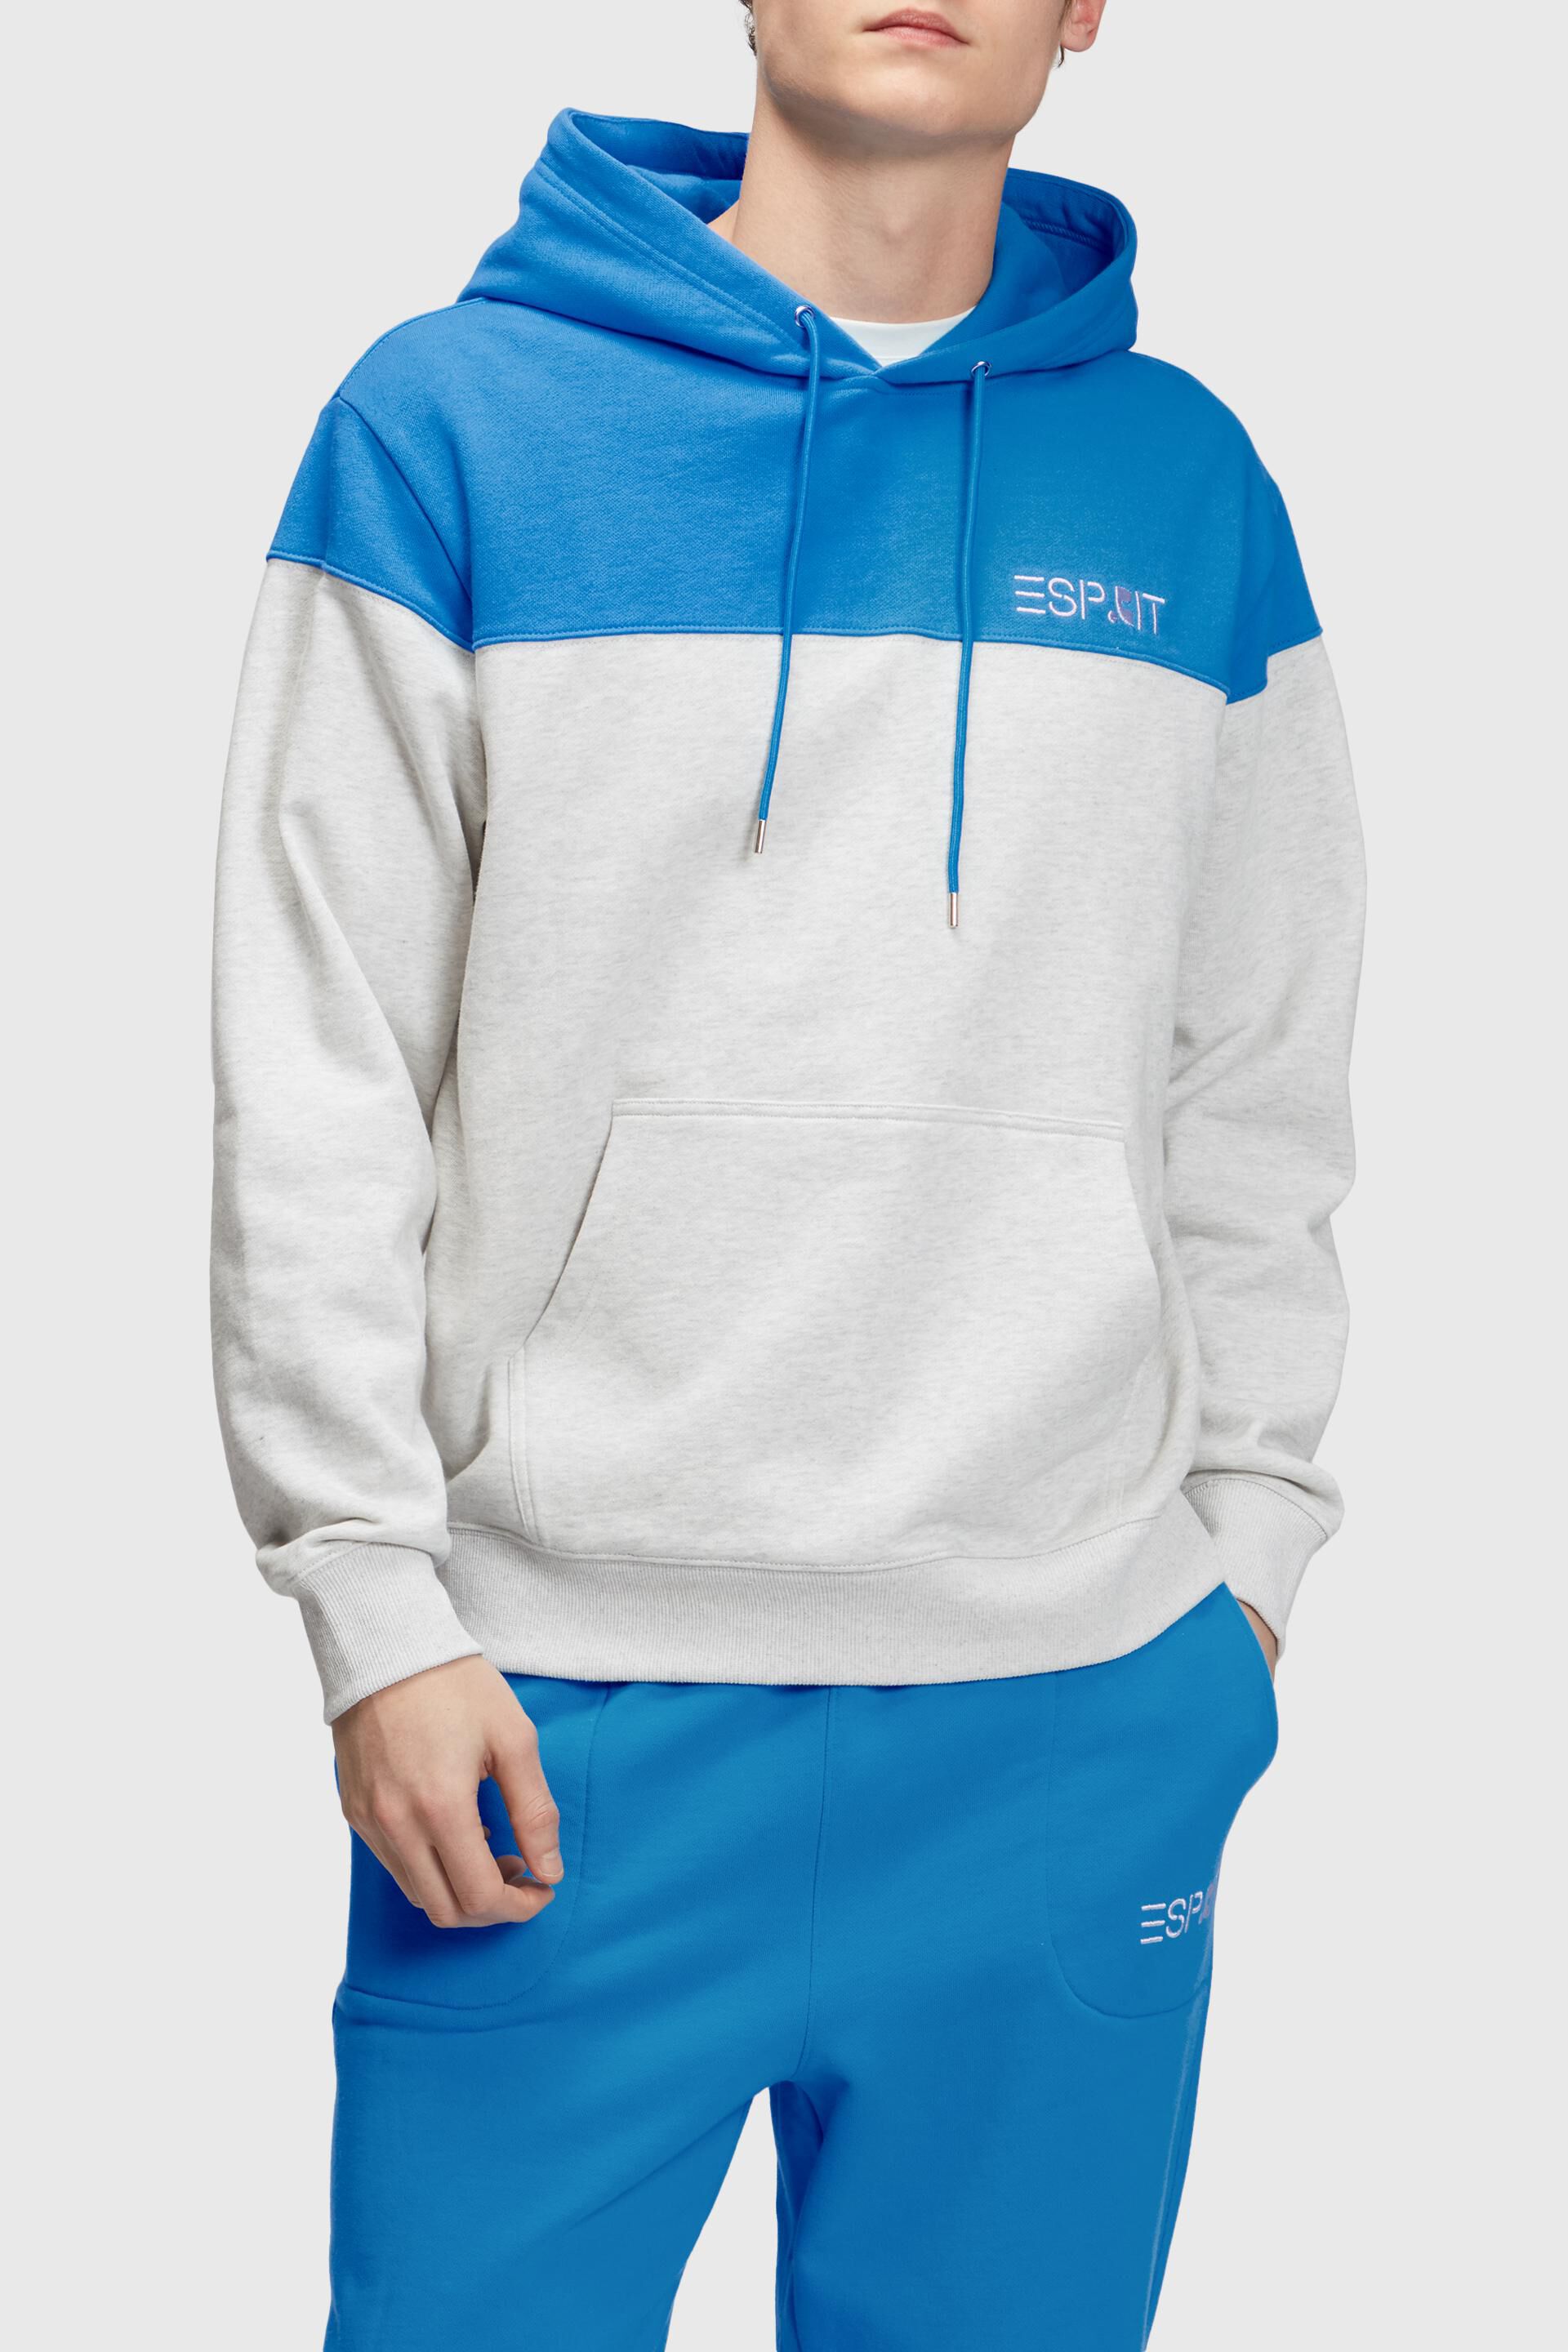 Esprit block Colour hoodie